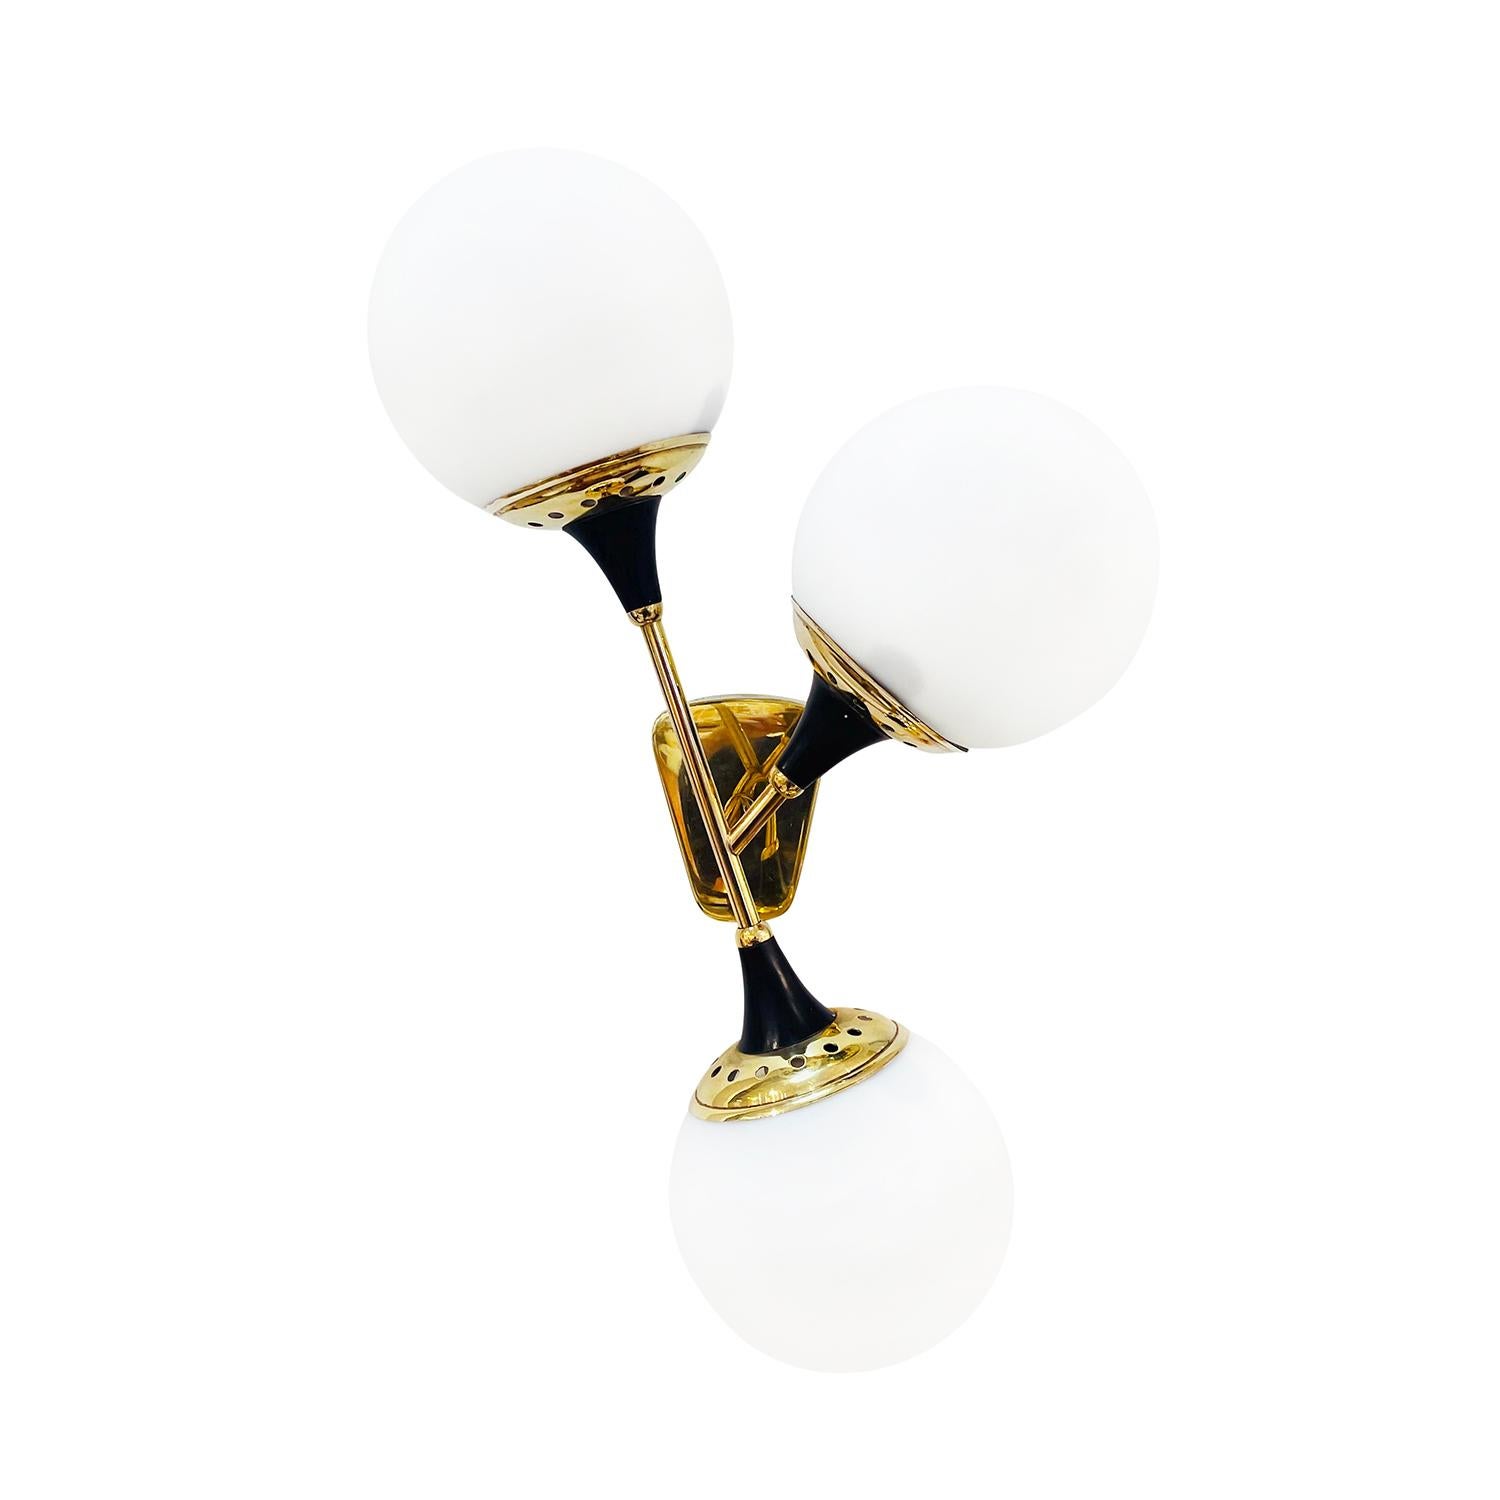 Ein Vintage Mid-Century modernes italienisches Paar Wandlampen, Leuchten aus handgefertigtem poliertem Messing entworfen und hergestellt von Stilnovo, in gutem Zustand. Jede der detailliert gestalteten Applikationen wird durch drei mattierte